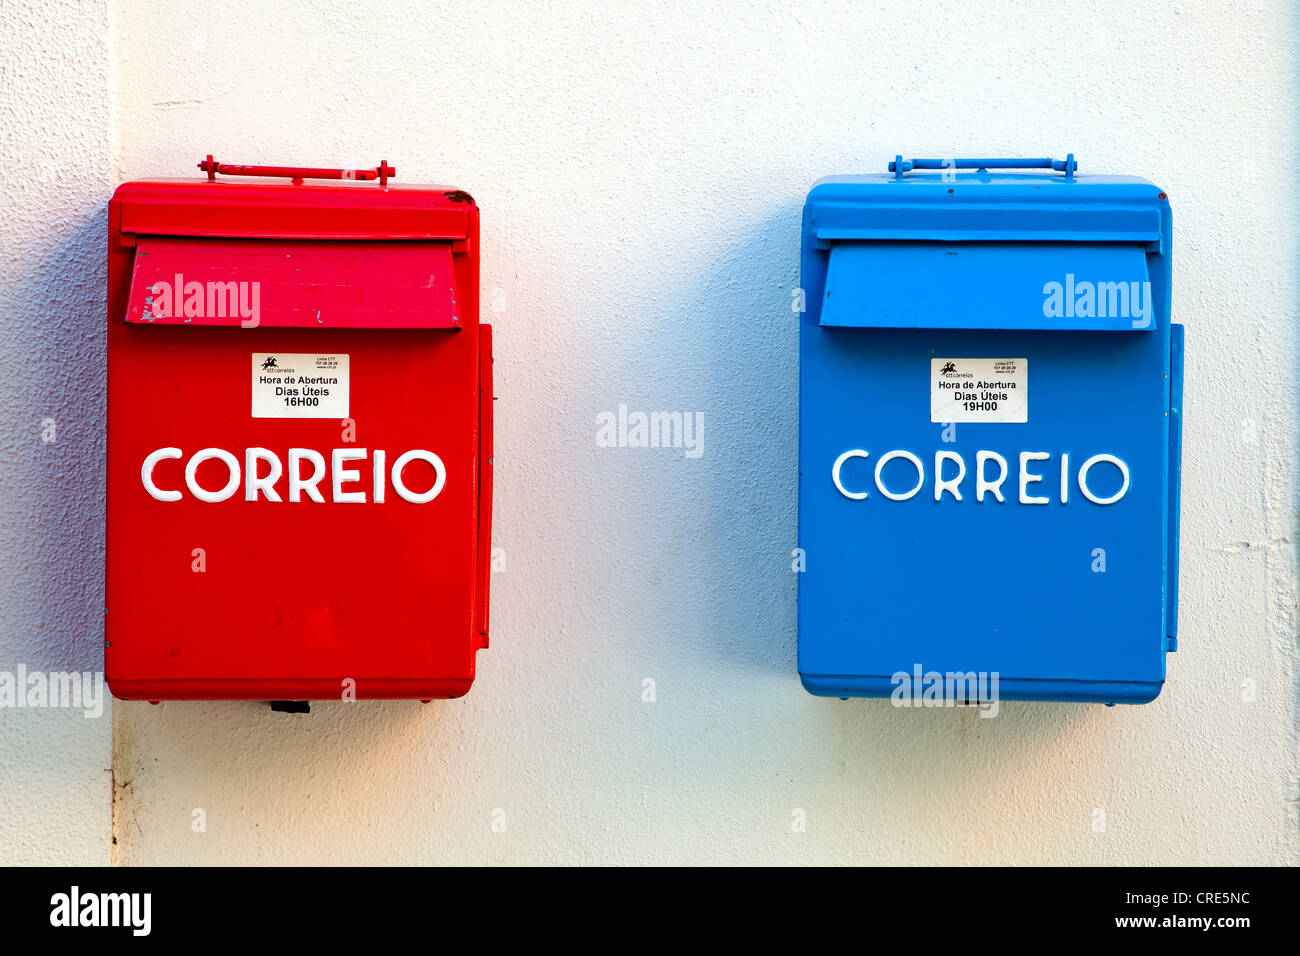 Los buzones de correo del servicio postal portuguesa, Correio, en rojo y azul para diferentes horas de recogida, en el barrio de Belem Foto de stock